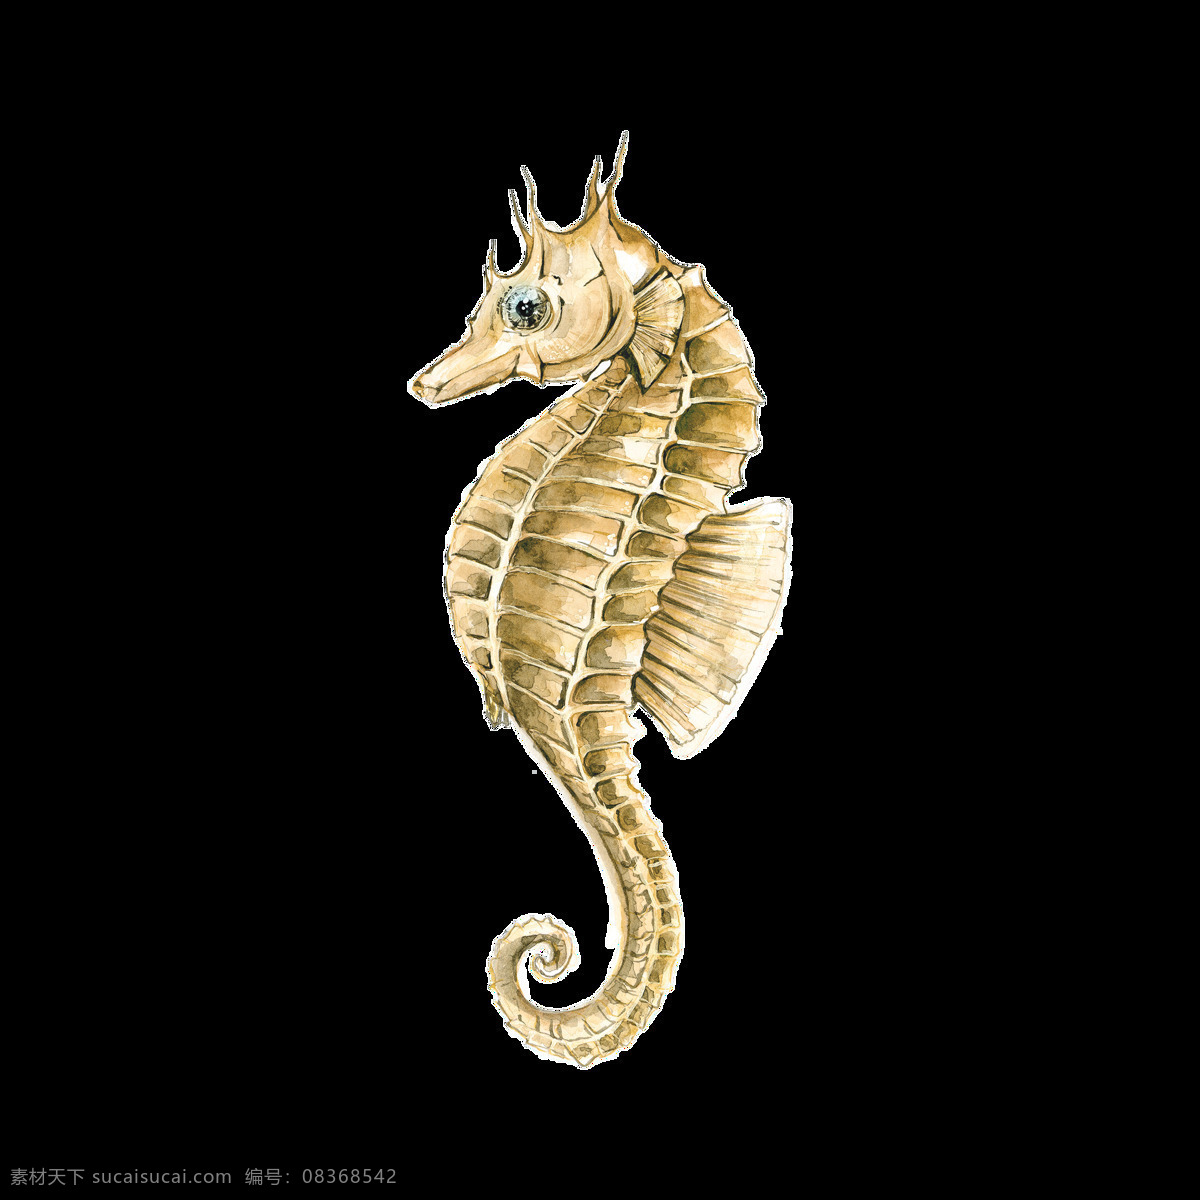 海洋生物 海马 卡通 透明 海洋 生物 水彩 免扣 手绘 透明素材 装饰 设计素材 淘宝素材 海报设计装饰 装饰图案